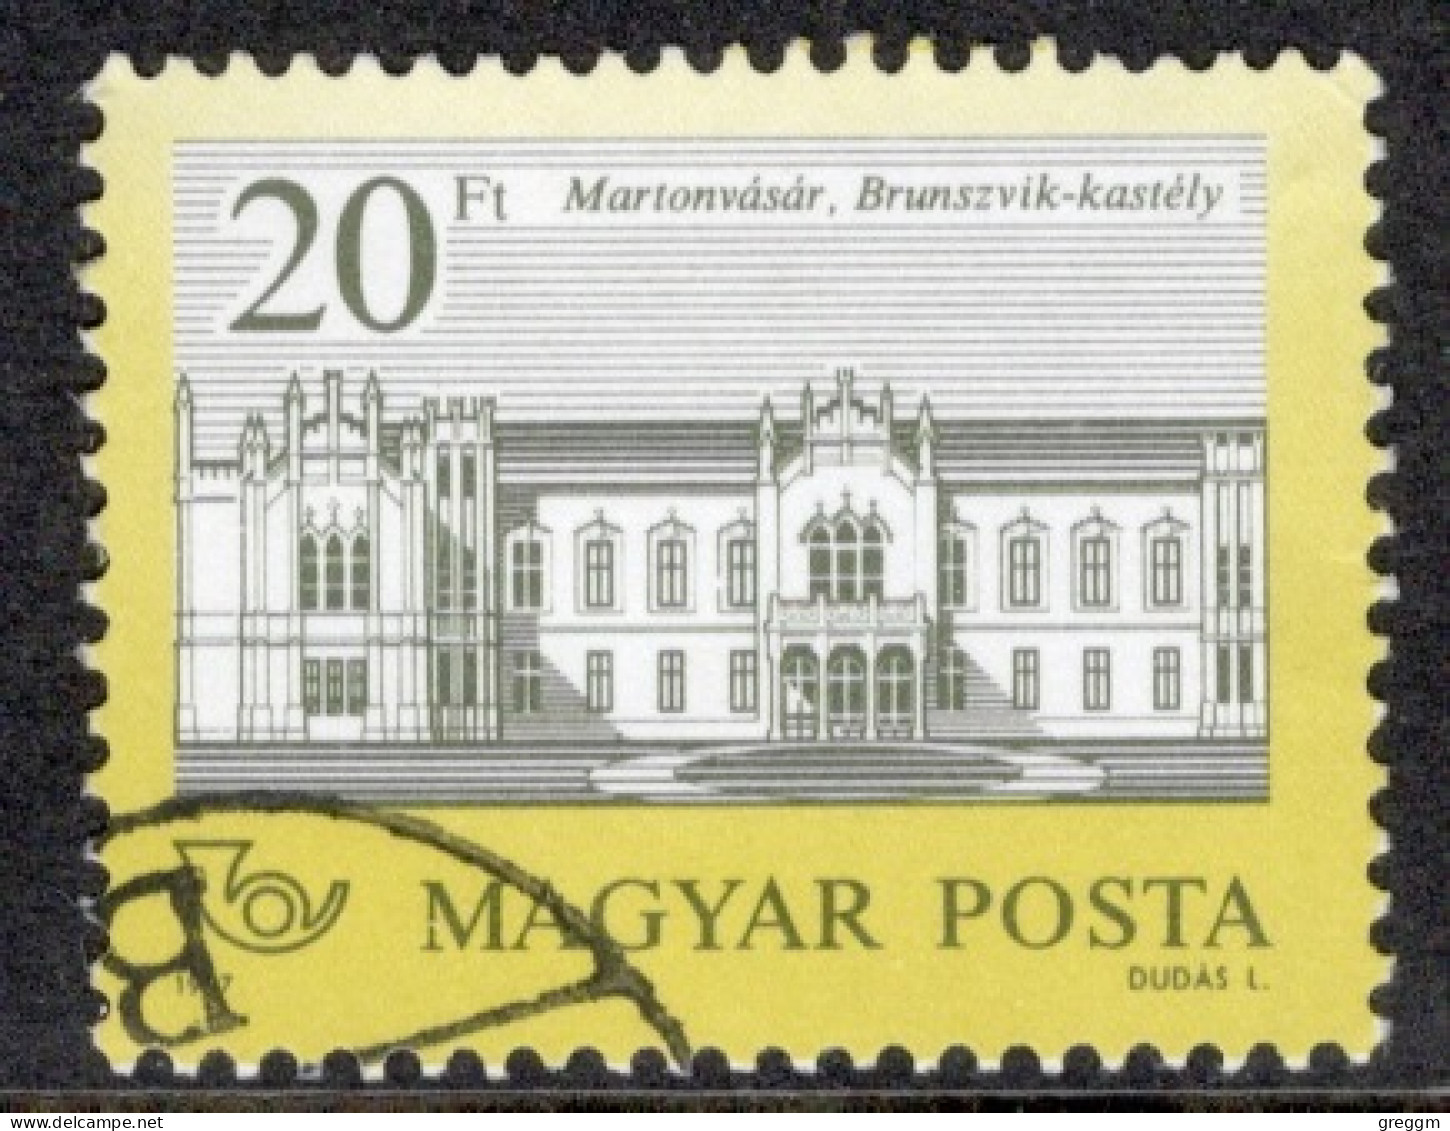 Hungary 1987  Single Stamp Celebrating Castles In Fine Used - Usati